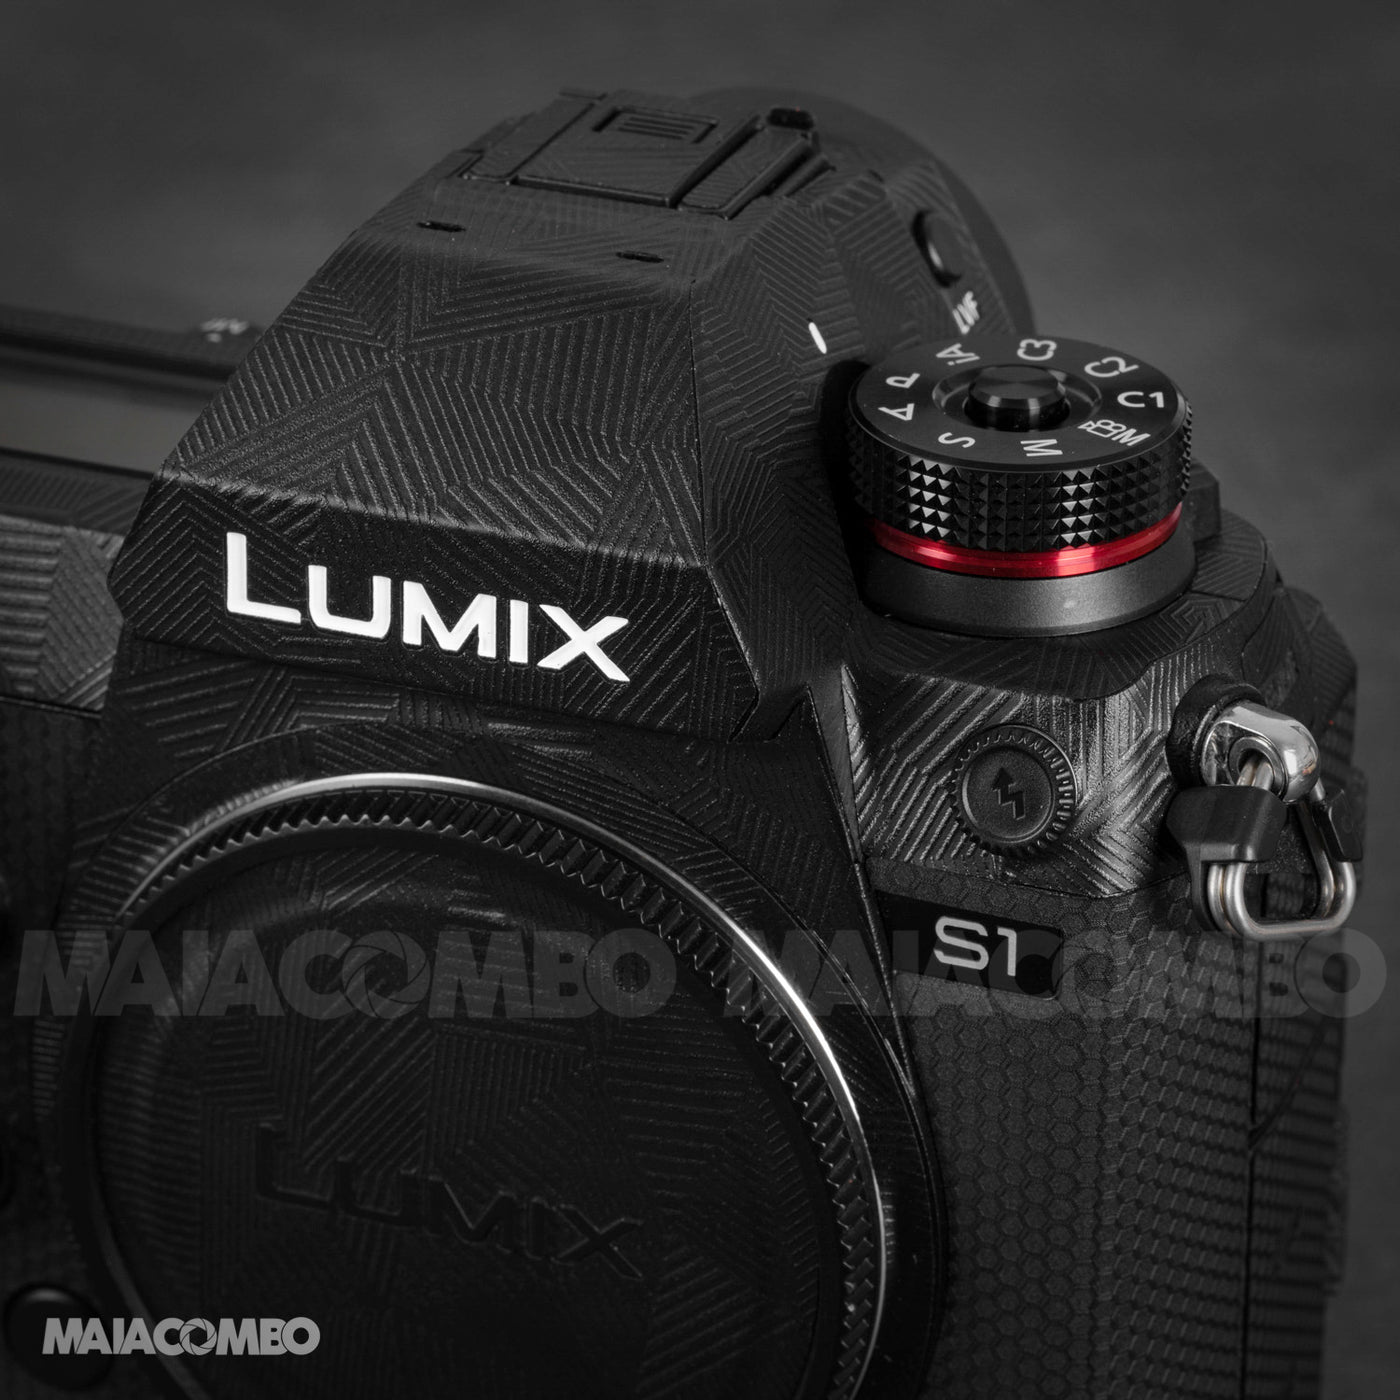 PANASONIC Lumix DC-S1 / S1R Camera Skin